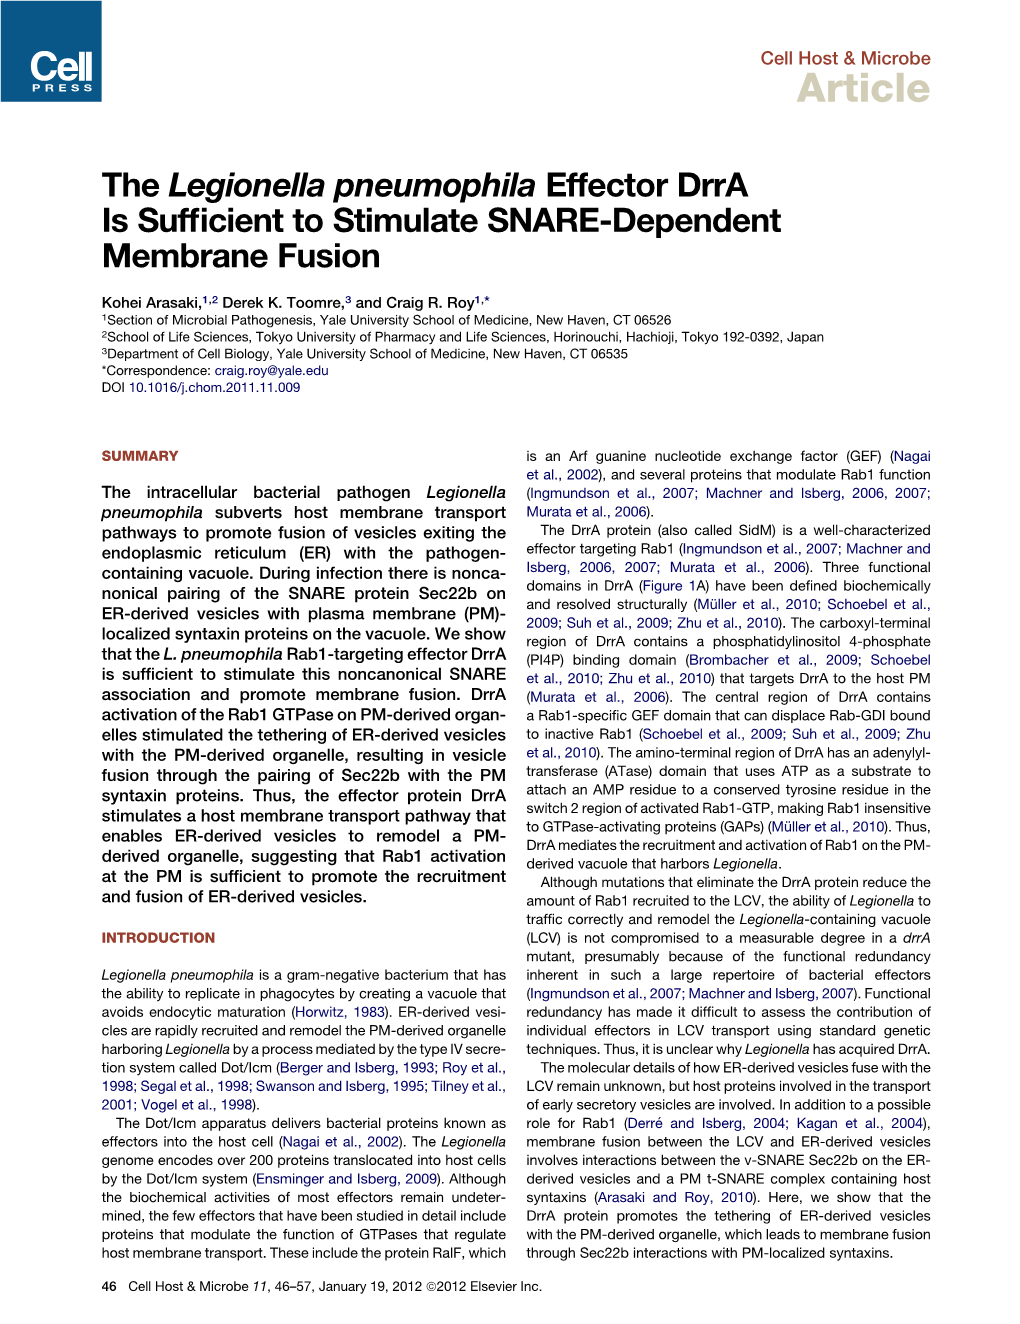 The Legionella Pneumophila Effector Drra Is Sufficient to Stimulate